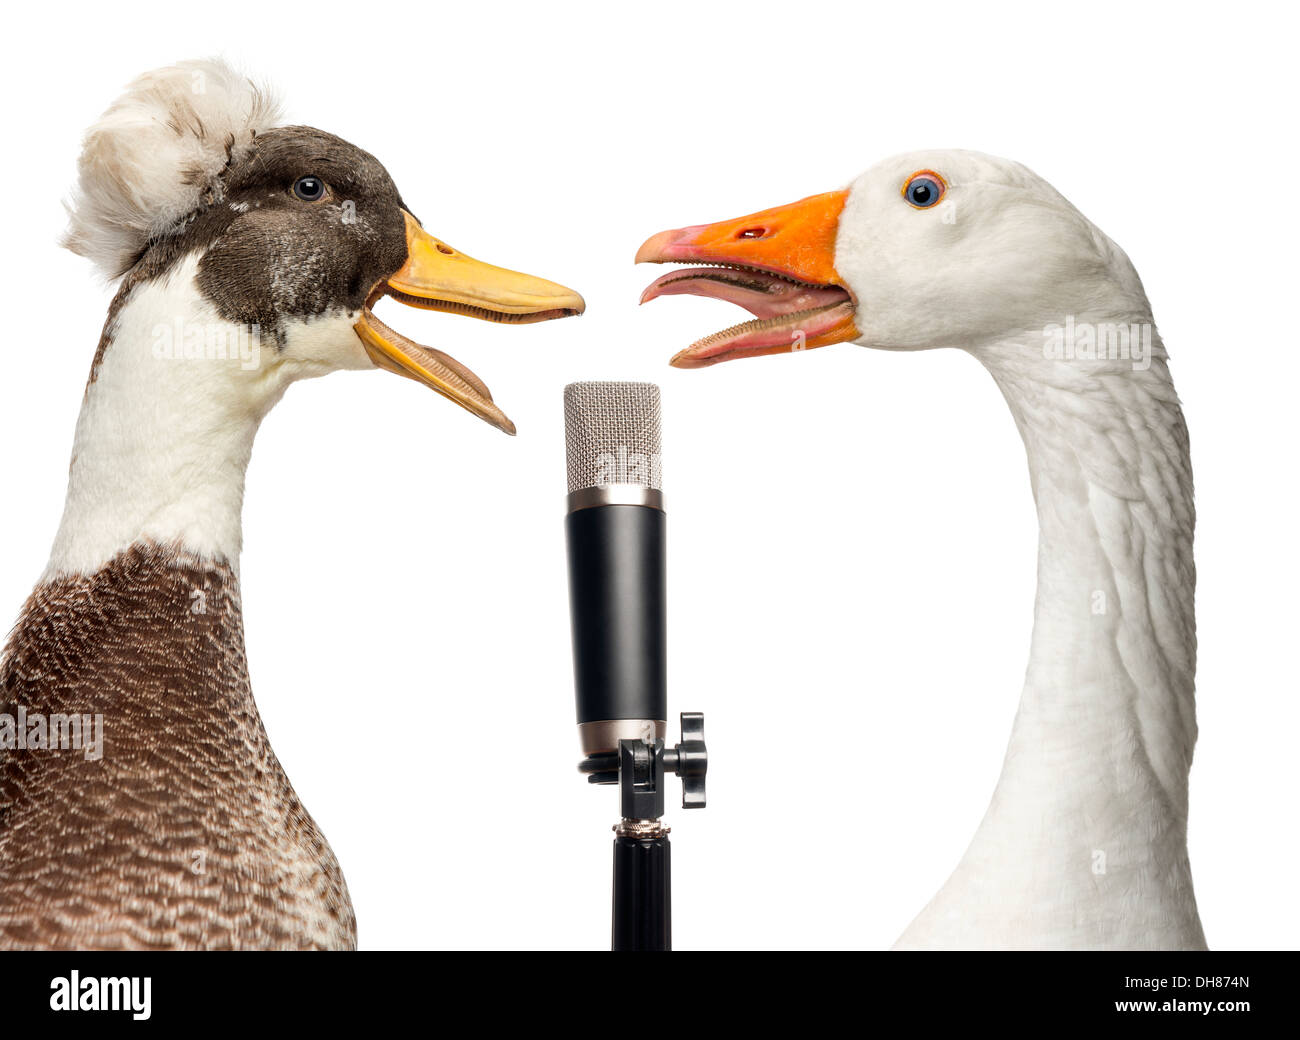 Close-up de macho, lophonetta specularioides Pato crestados, y Domestic Goose, Anser anser domesticus, cantando en el micrófono Foto de stock